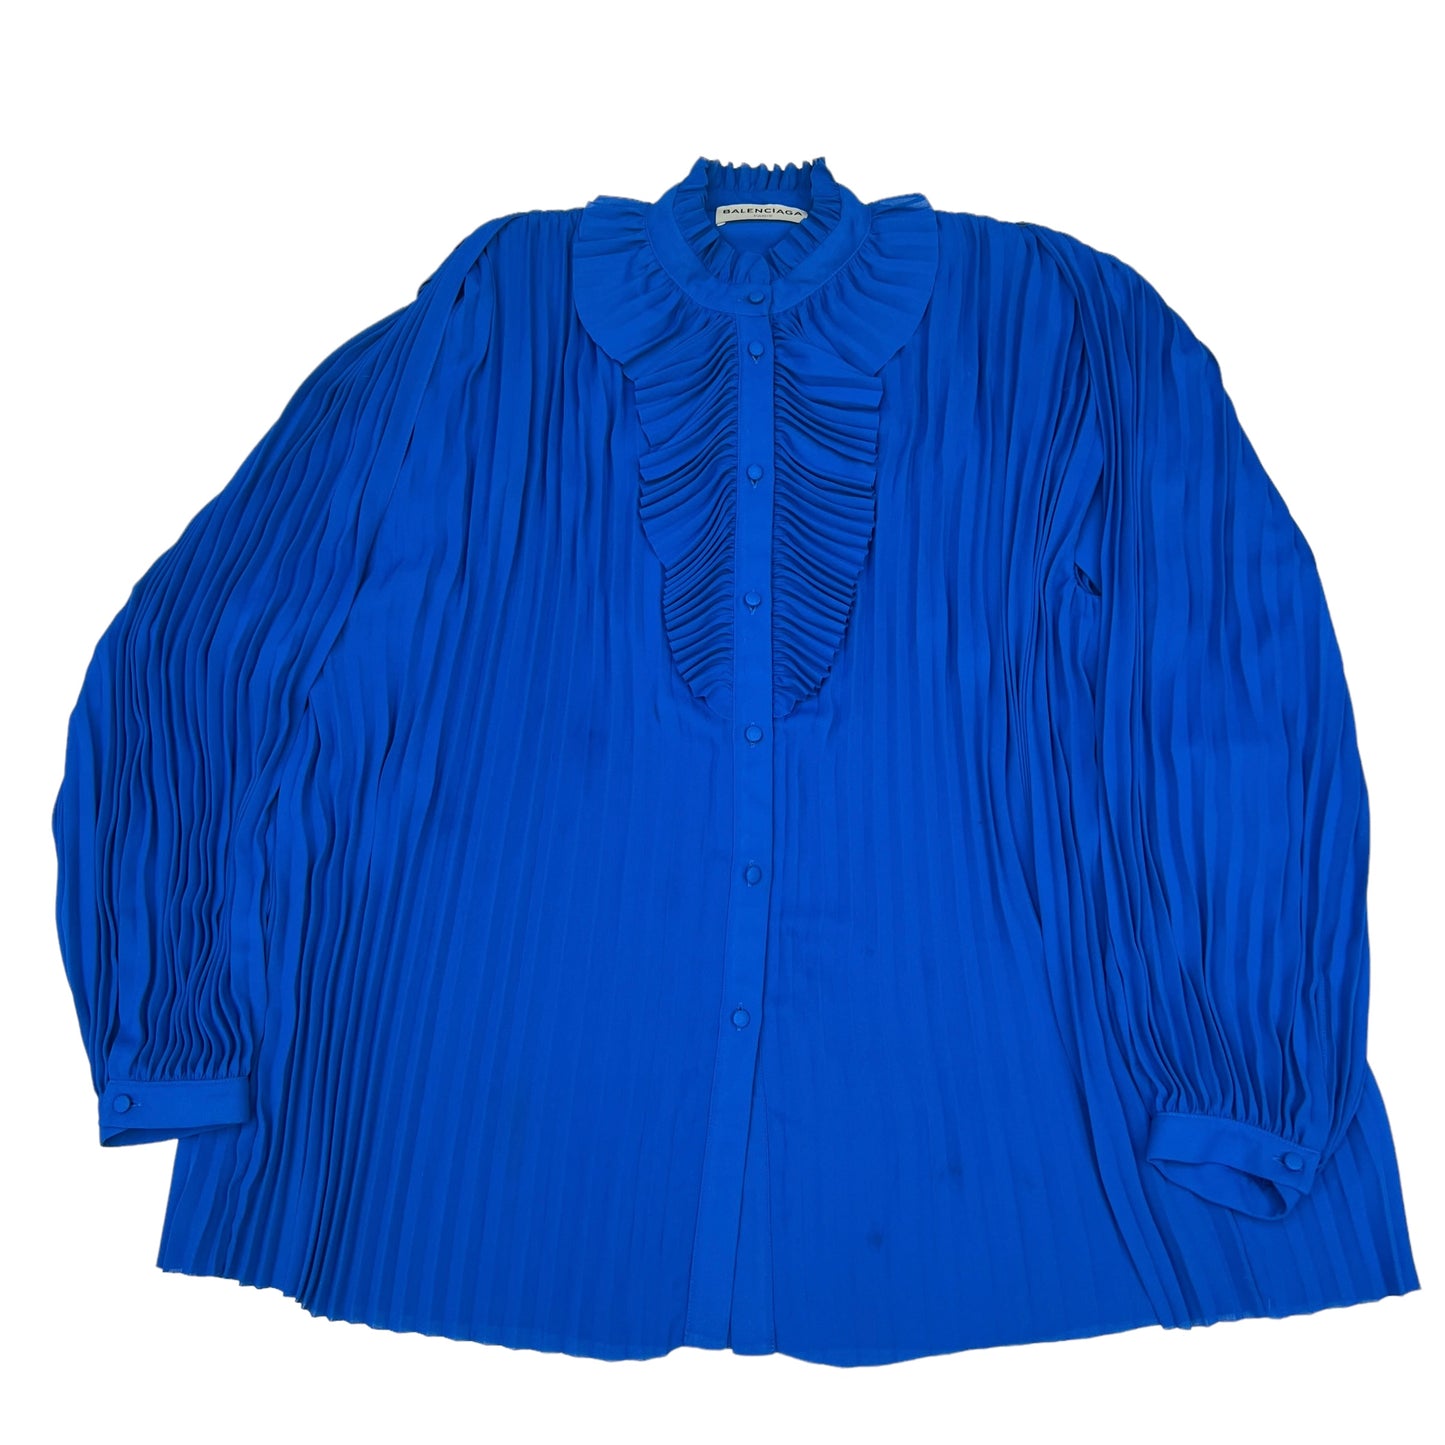 Blue Soft Shirt - S